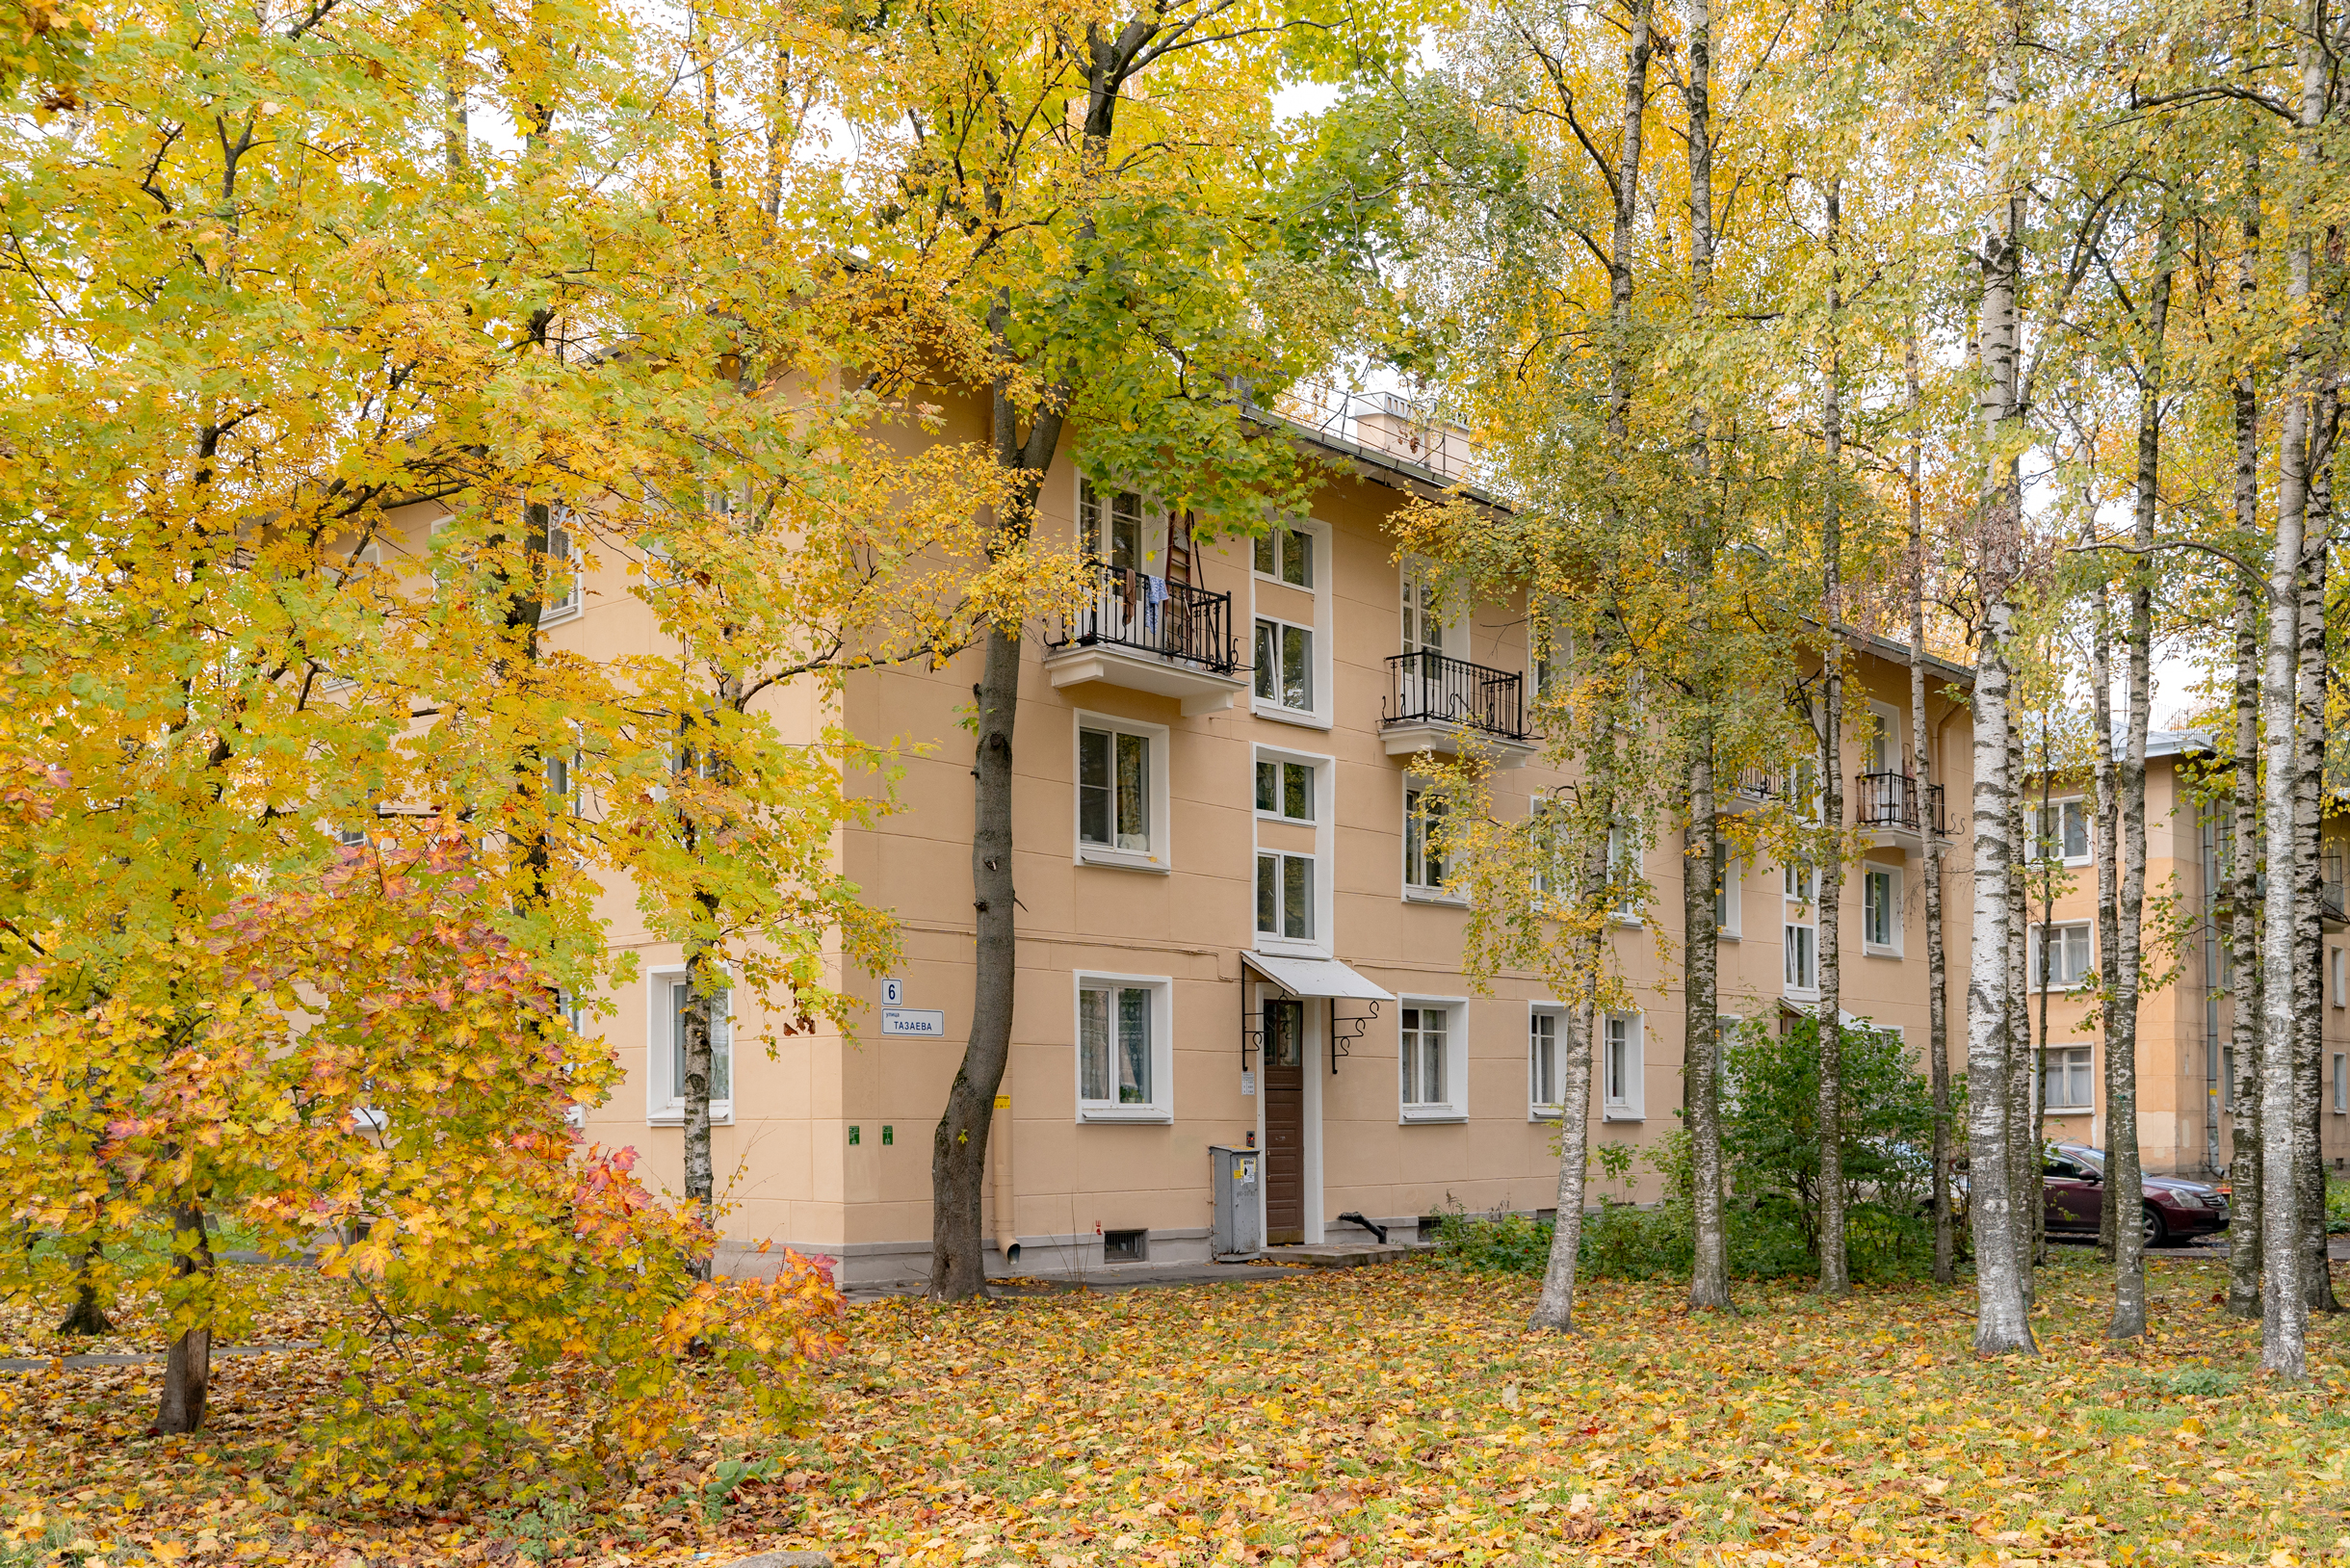 Так выглядит жилая застройка образца 1960⁠-⁠х годов вдоль Новгородской улицы, на территории бывшей Никольской слободы